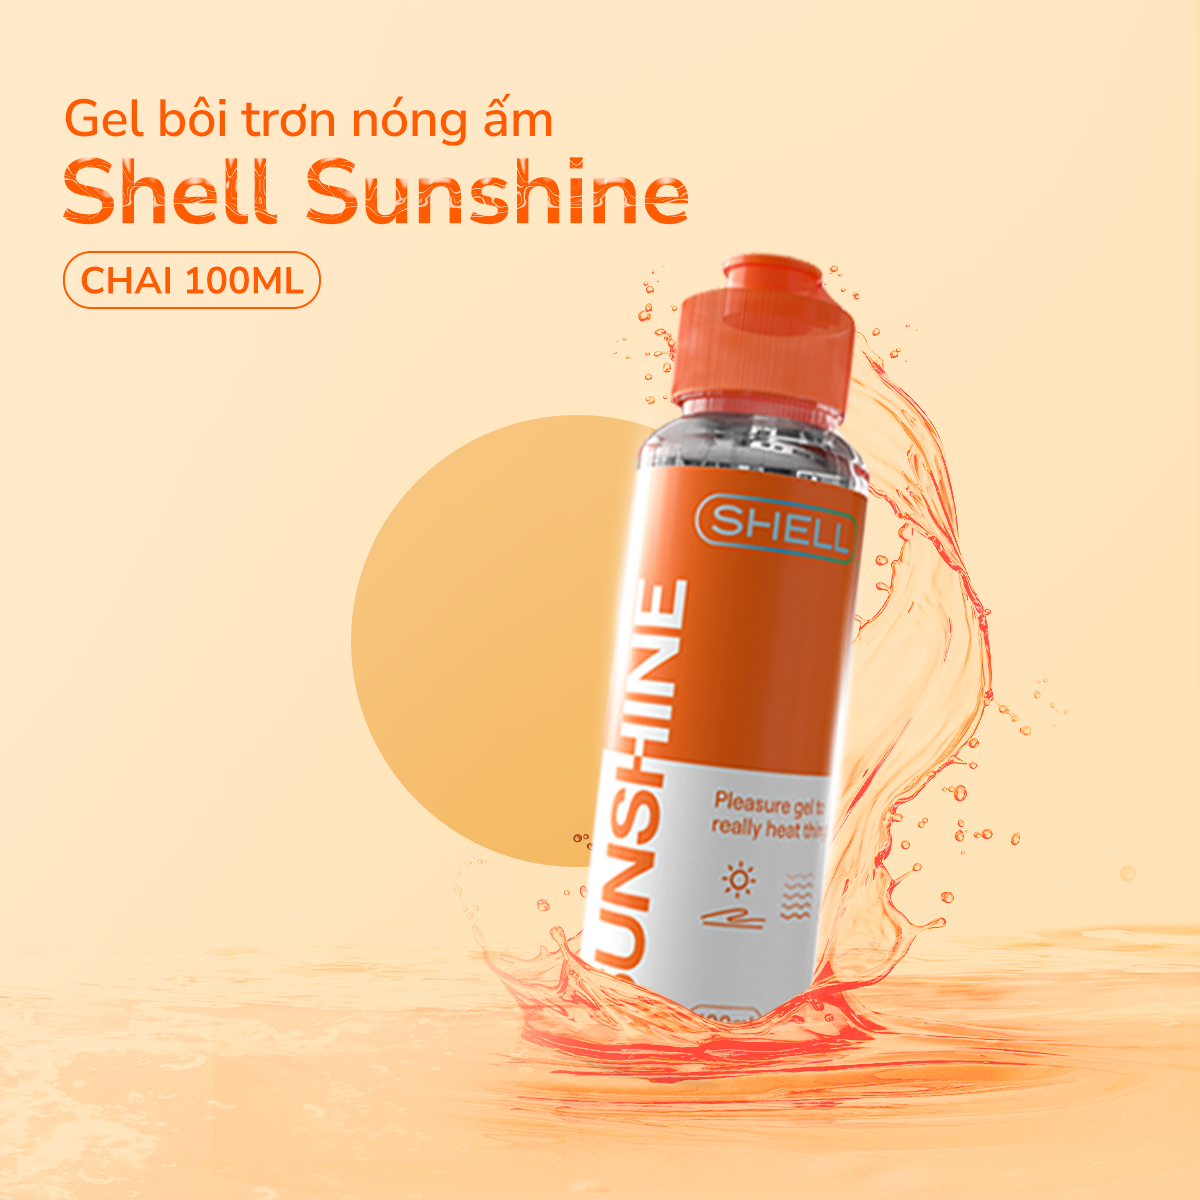 Gel bôi trơn ấm nóng - Shell Sunshine - Chai 100ml